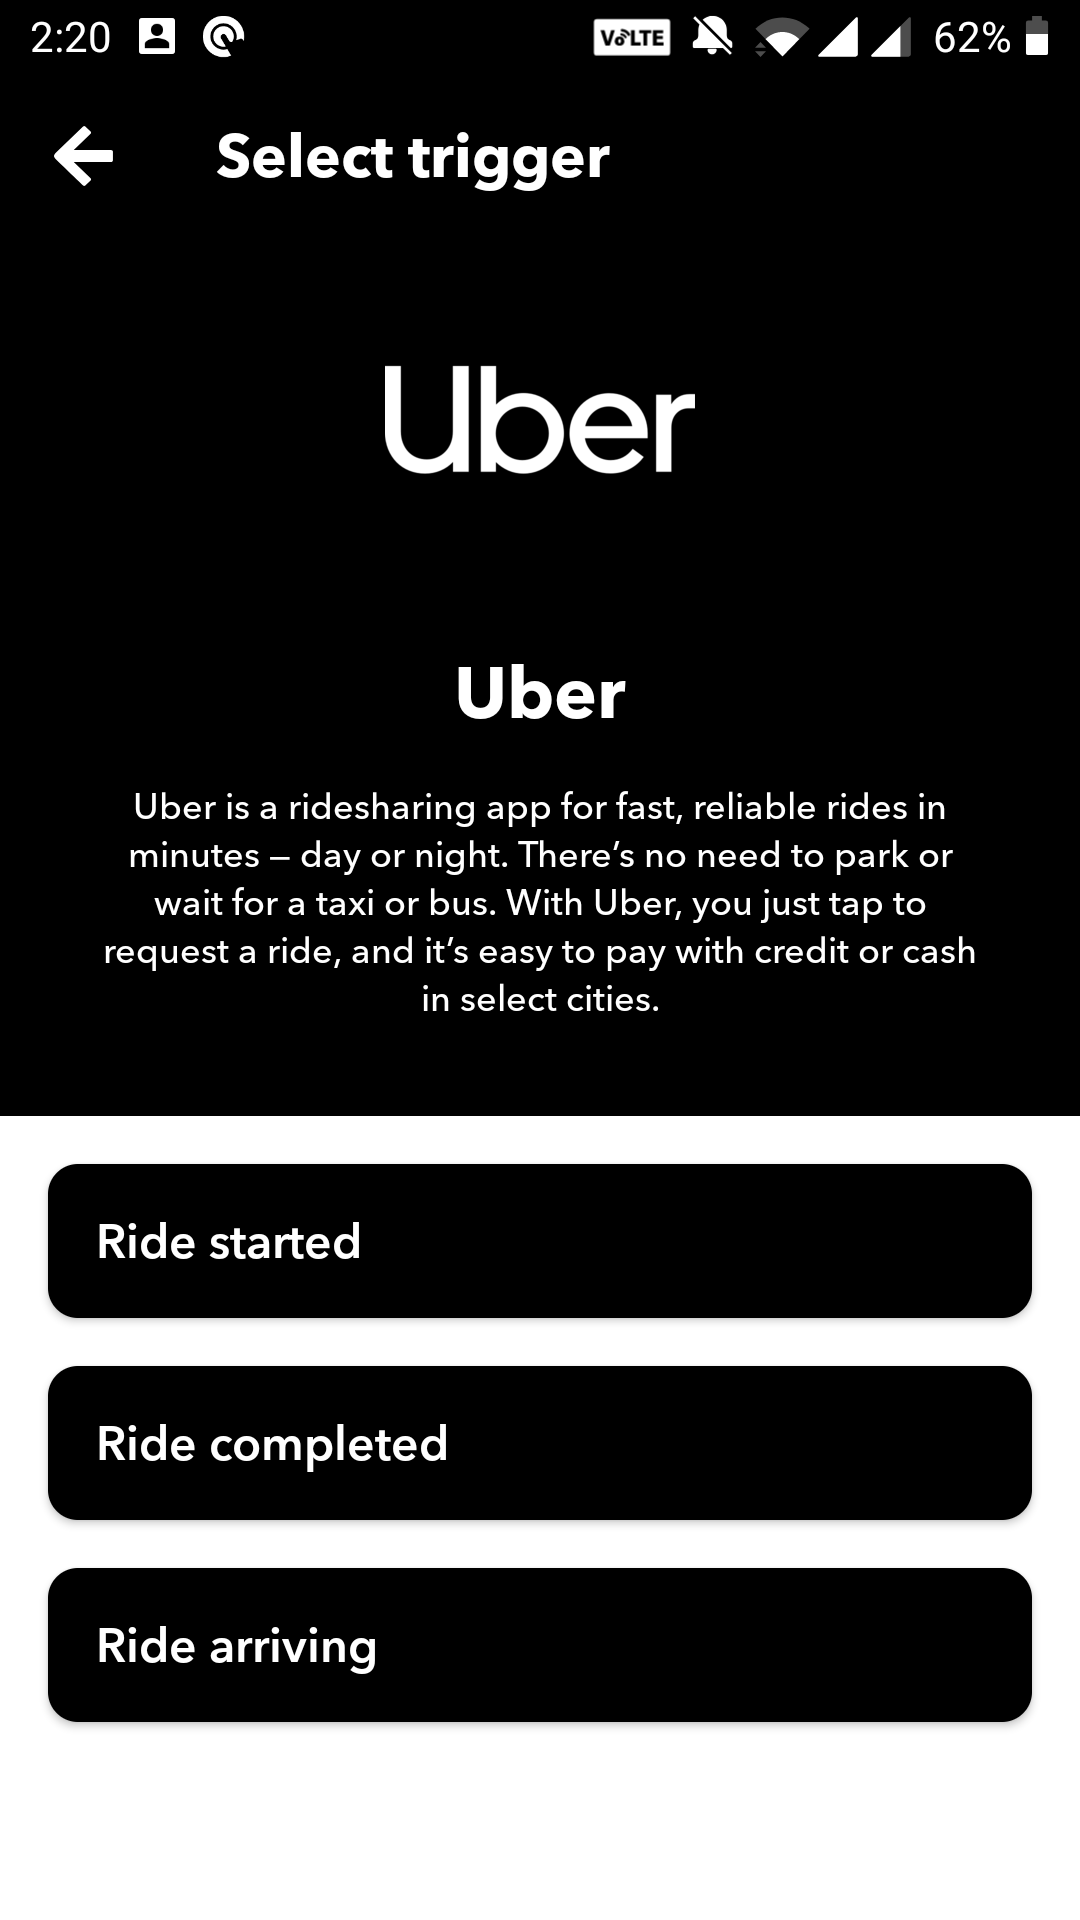 uber ride arriving - 6 automazioni IFTTT da provare con una presa intelligente o una lampadina